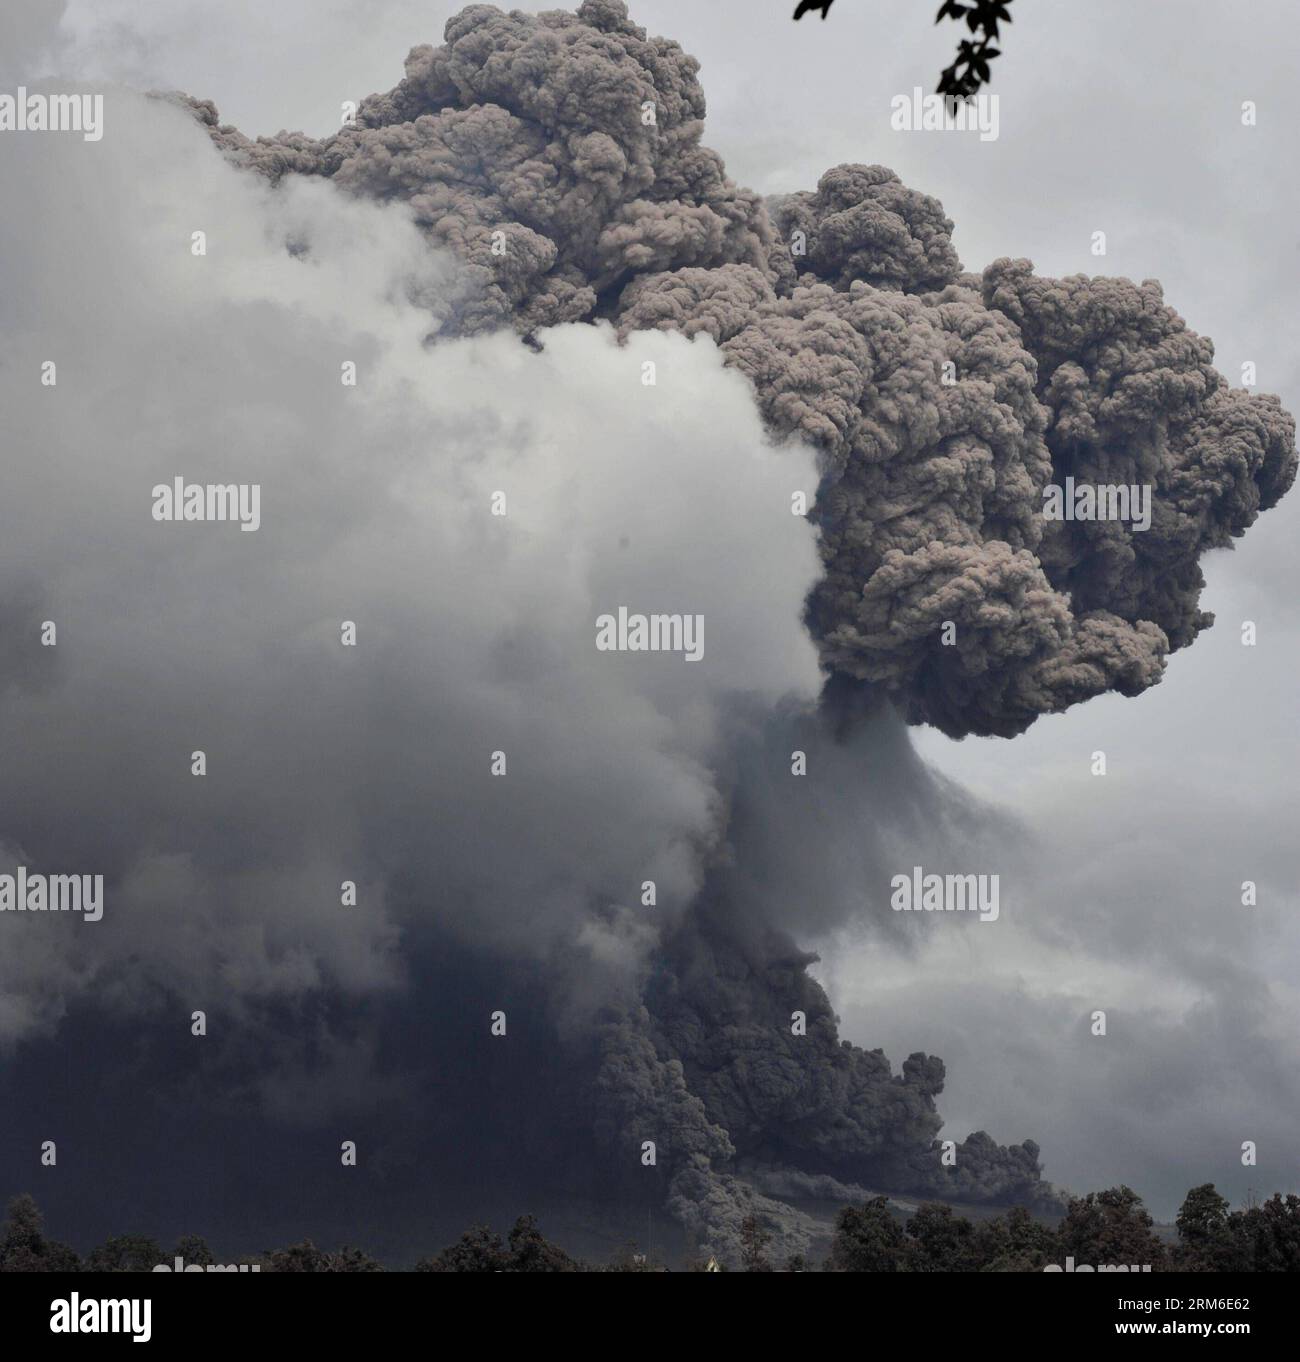 (140107) -- SUMATRA SETTENTRIONALE, 7 gennaio 2014. (Xinhua) -- il Monte Sinabung lancia materiali vulcanici mentre erutta nel nord di Sumatra, Indonesia, 7 gennaio 2014. Oltre 21.800 persone hanno cercato rifugio in 33 rifugi nel distretto di Karo nella provincia di Sumatra settentrionale, mentre il vulcano Sinabung ha continuato a spargere cenere e lava lunedì, ha detto un funzionario indonesiano. (Xinhua/Agung Kuncahya B.) INDONESIA-SUMATRA SETTENTRIONALE-MONTE SINABUNG-ERUPTION PUBLICATIONxNOTxINxCHN Sumatra settentrionale 7 gennaio 2014 XINHUA il Monte Sinabung spews Volcanic Material as IT eruts in North Sumatra Indonesia 7 gennaio 2014 oltre 21 800 celebrità hanno cercato Refu Foto Stock